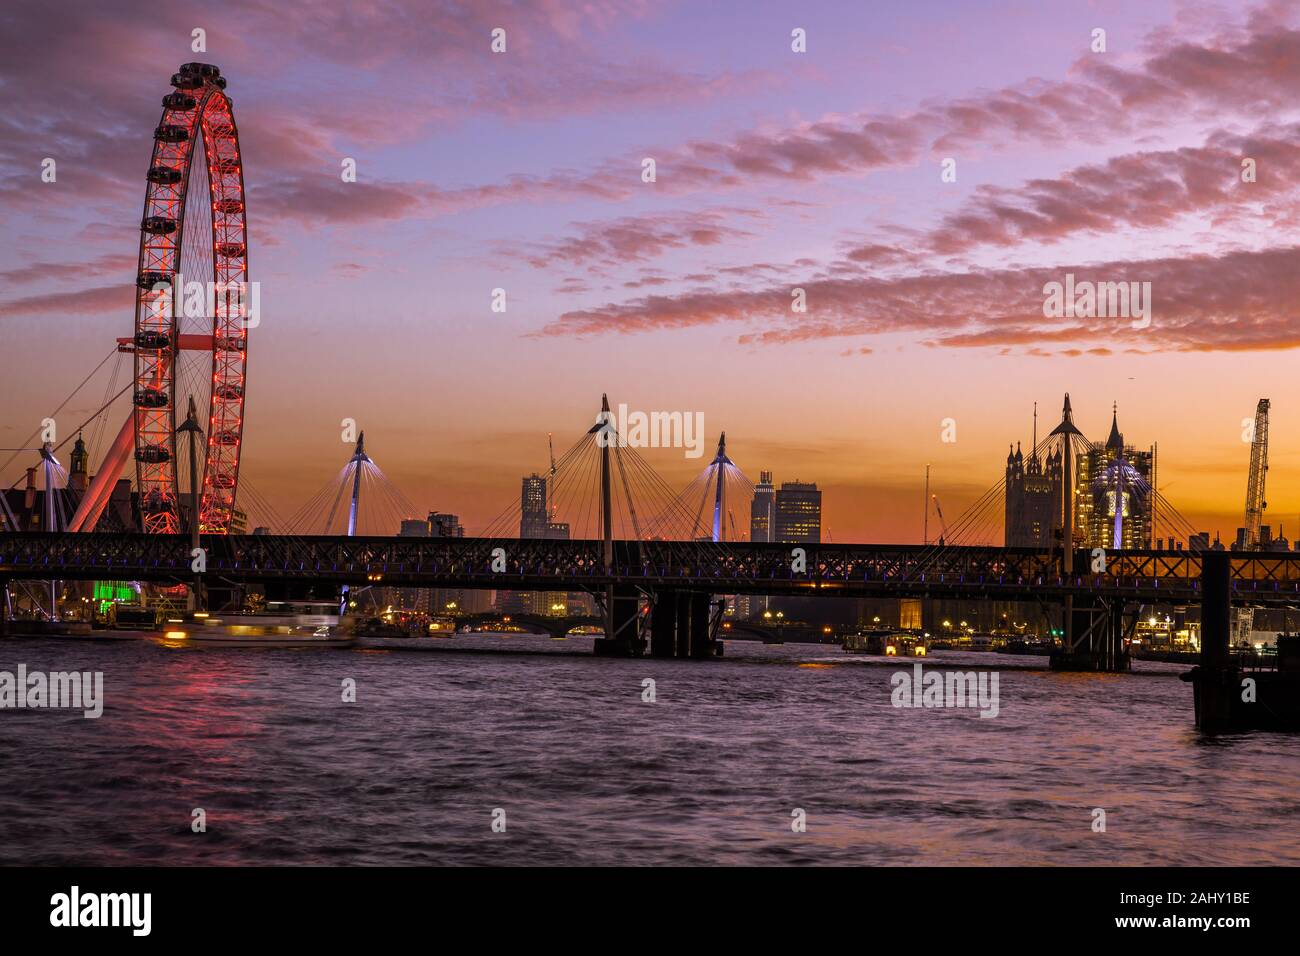 Paisaje paisaje de Londres, el London Eye, crepúsculo, crepúsculo, Blue Hour con el Southbank y destino de viaje por el Río Támesis, Londres, Inglaterra Foto de stock